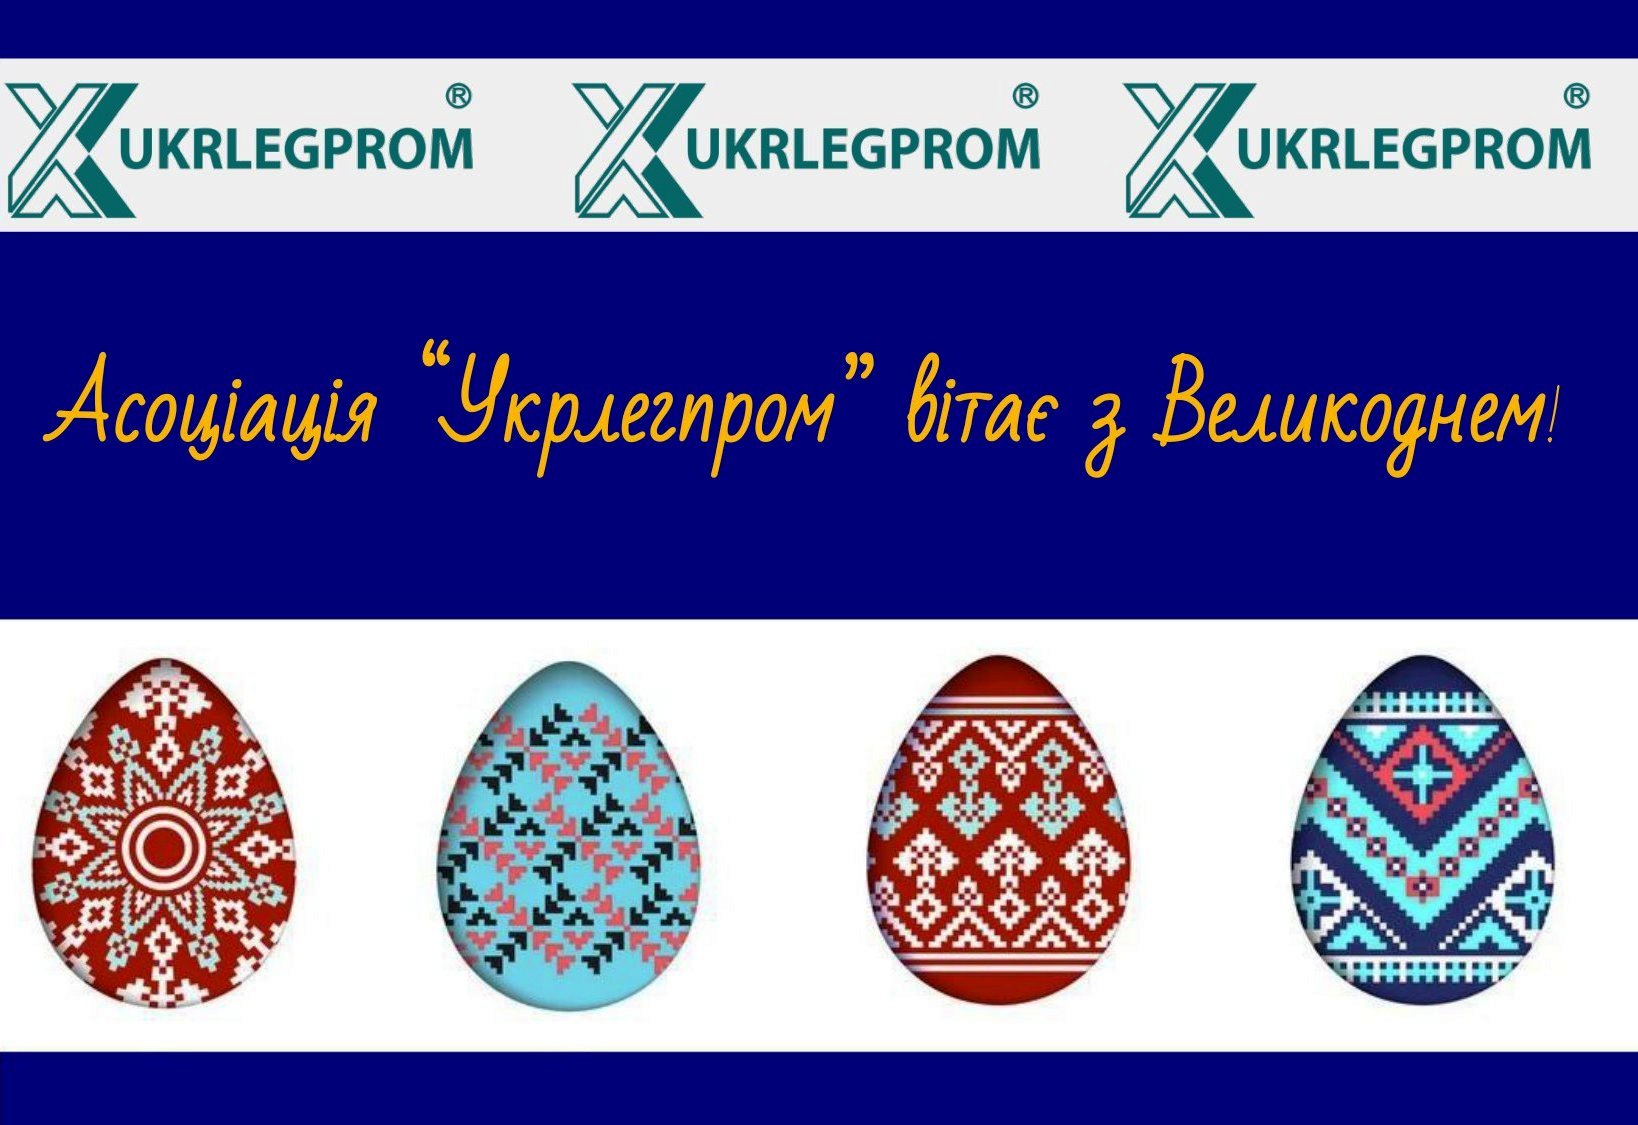 (Українська) УКРЛЕГПРОМ вітає зі світлим святом Великодня!